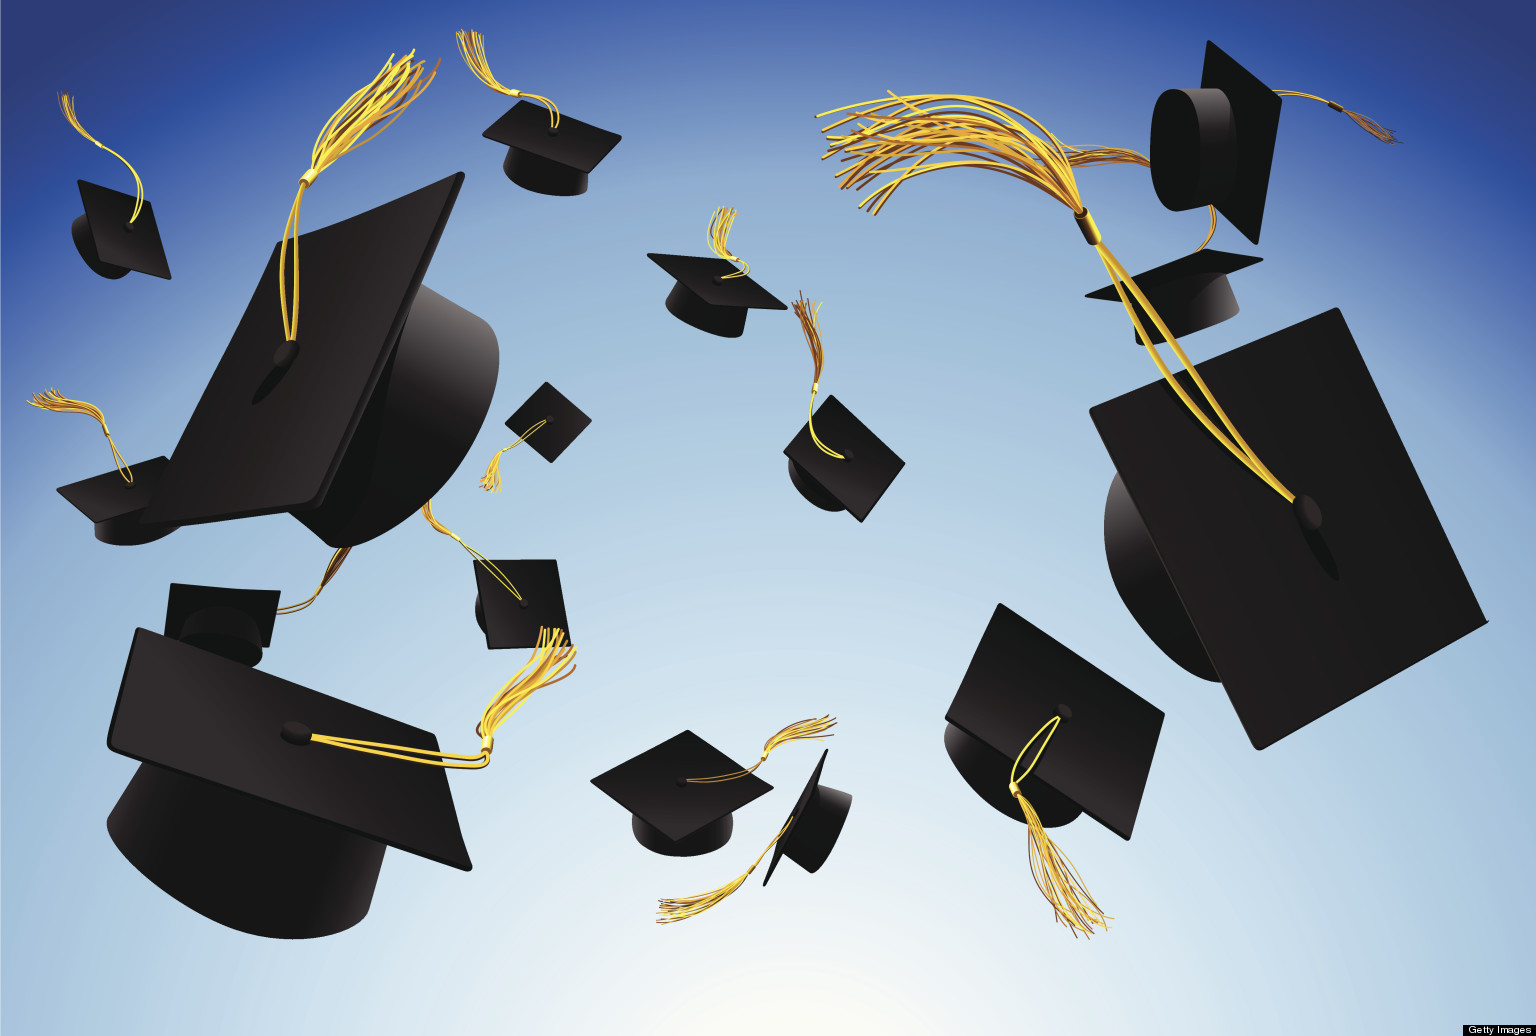 Graduation caps thrown in the air